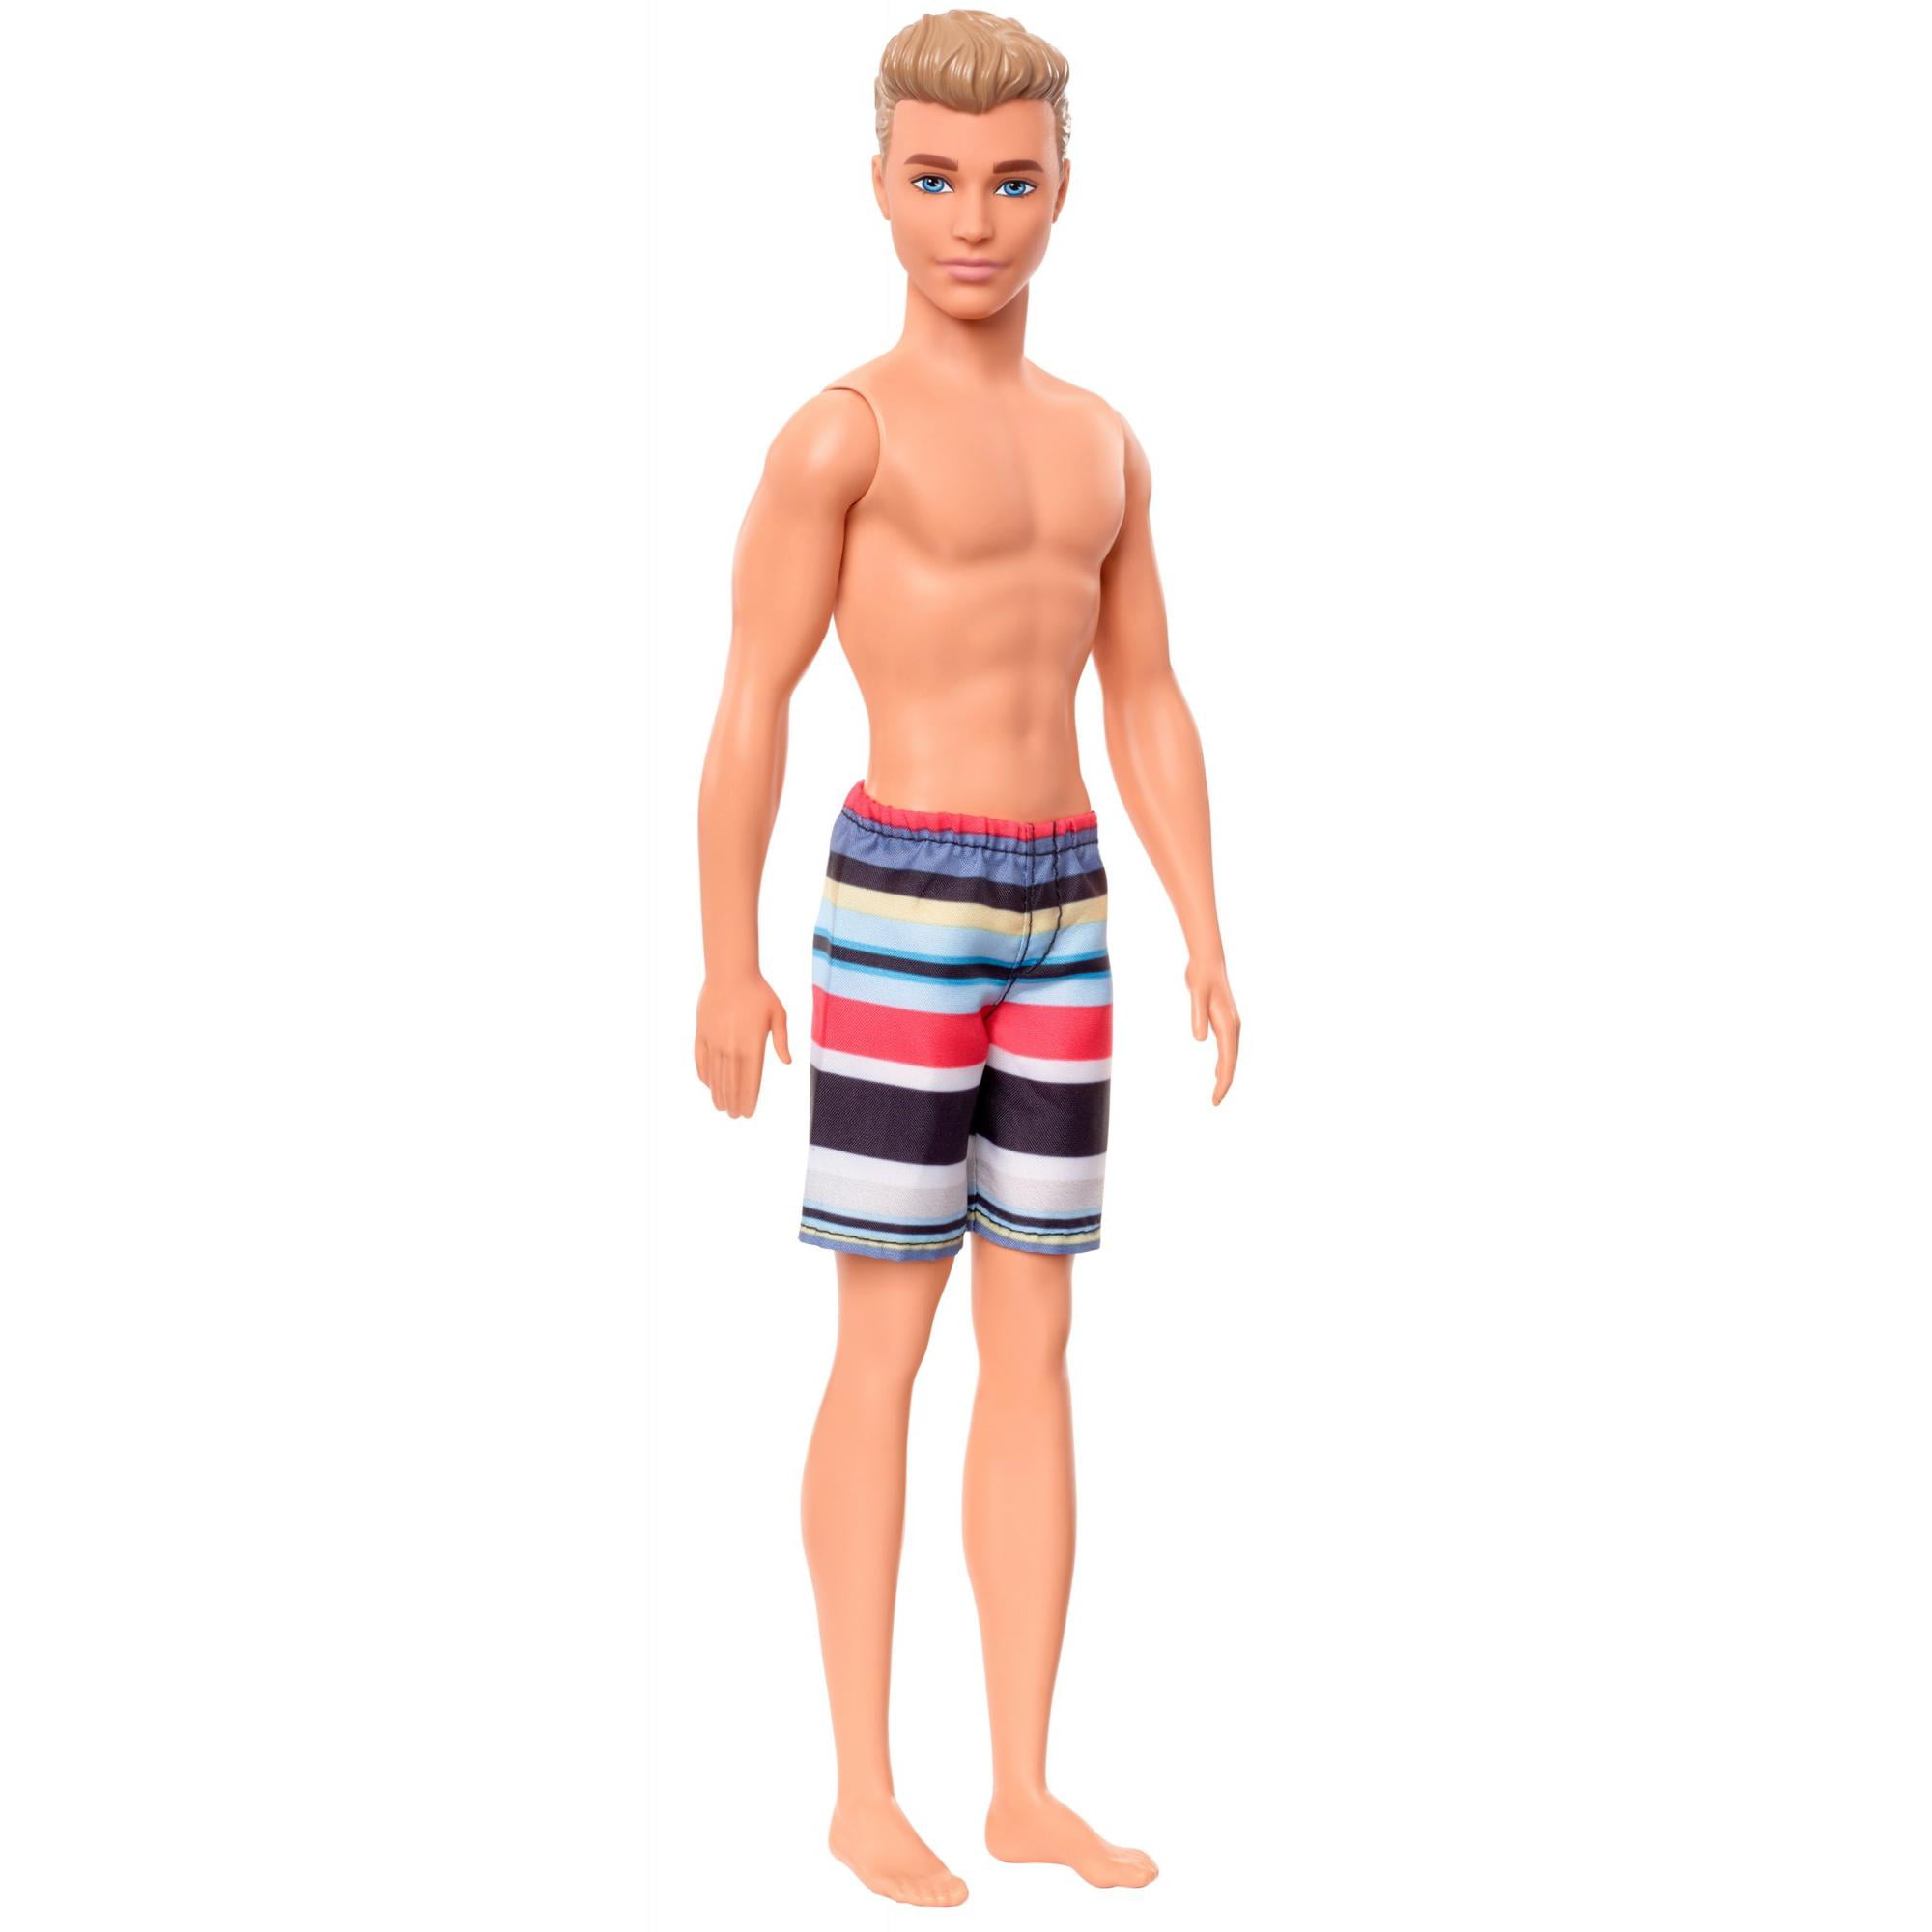 Pennenvriend Makkelijk te gebeuren snijden Barbie Ken Beach Doll with Multi-Colored Swimsuit Trunks - Walmart.com